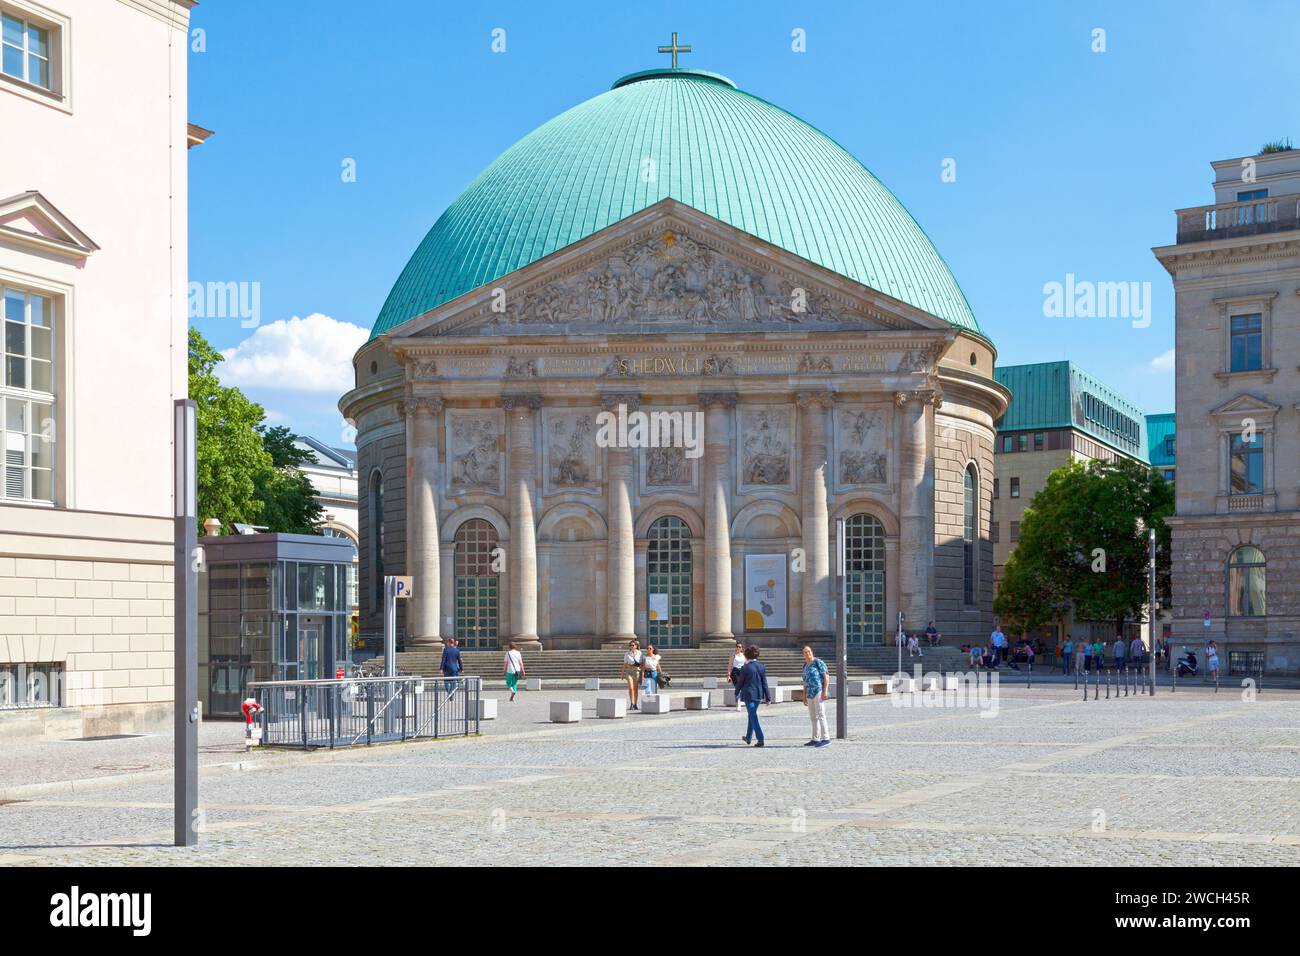 Berlino, Germania - 01 2019 giugno: La Cattedrale di S. Edvige (in tedesco Sankt-Hedwigs-Cattedrale) è una cattedrale cattolica romana situata sulla Bebelplatz. È t Foto Stock